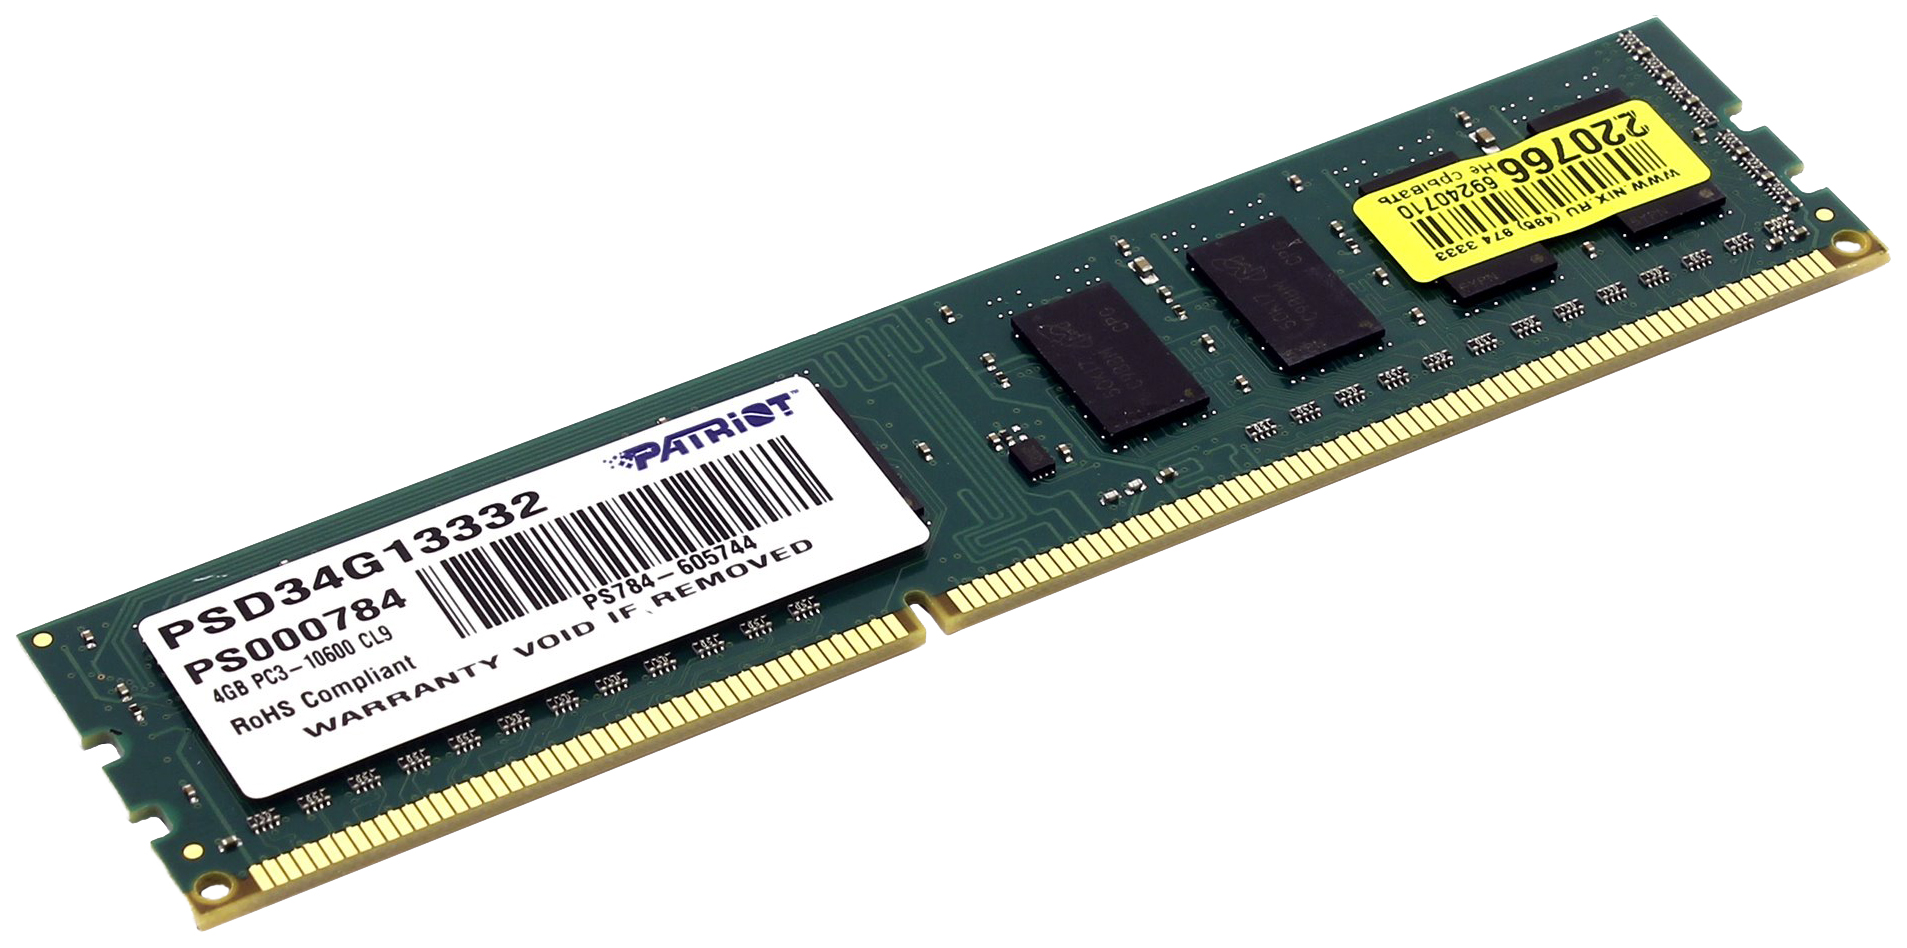 Купить Оперативная память Patriot Signature Series 4Gb DDR-III 1333MHz (PSD34G13332) - Vlarnika